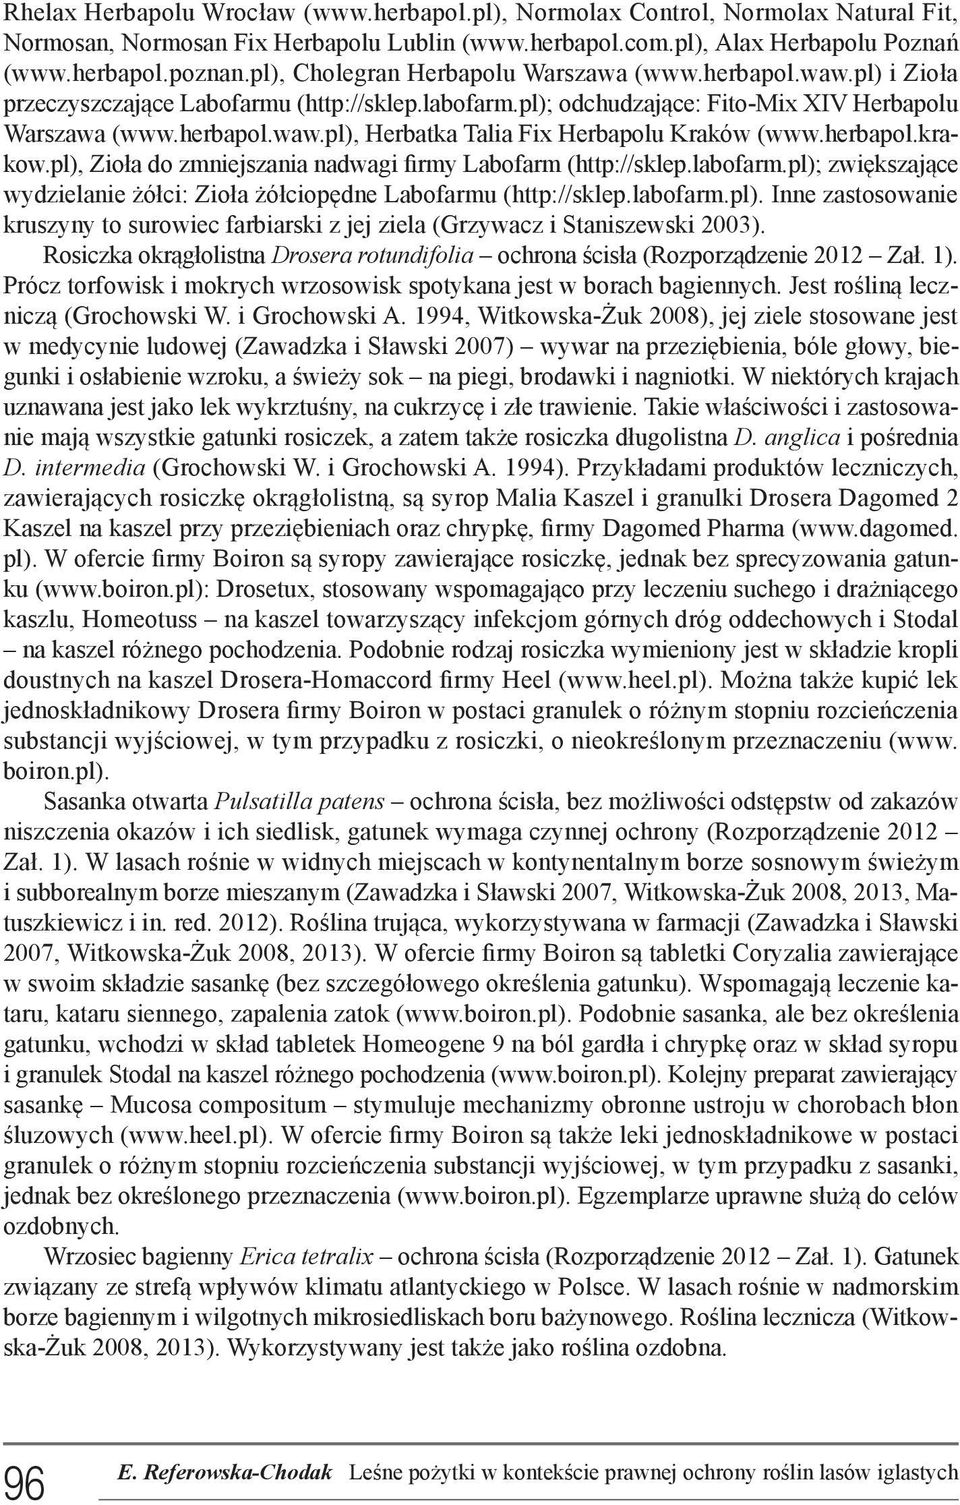 herbapol.krakow.pl), Zioła do zmniejszania nadwagi firmy Labofarm (http://sklep.labofarm.pl); zwiększające wydzielanie żółci: Zioła żółciopędne Labofarmu (http://sklep.labofarm.pl). Inne zastosowanie kruszyny to surowiec farbiarski z jej ziela (Grzywacz i Staniszewski 2003).